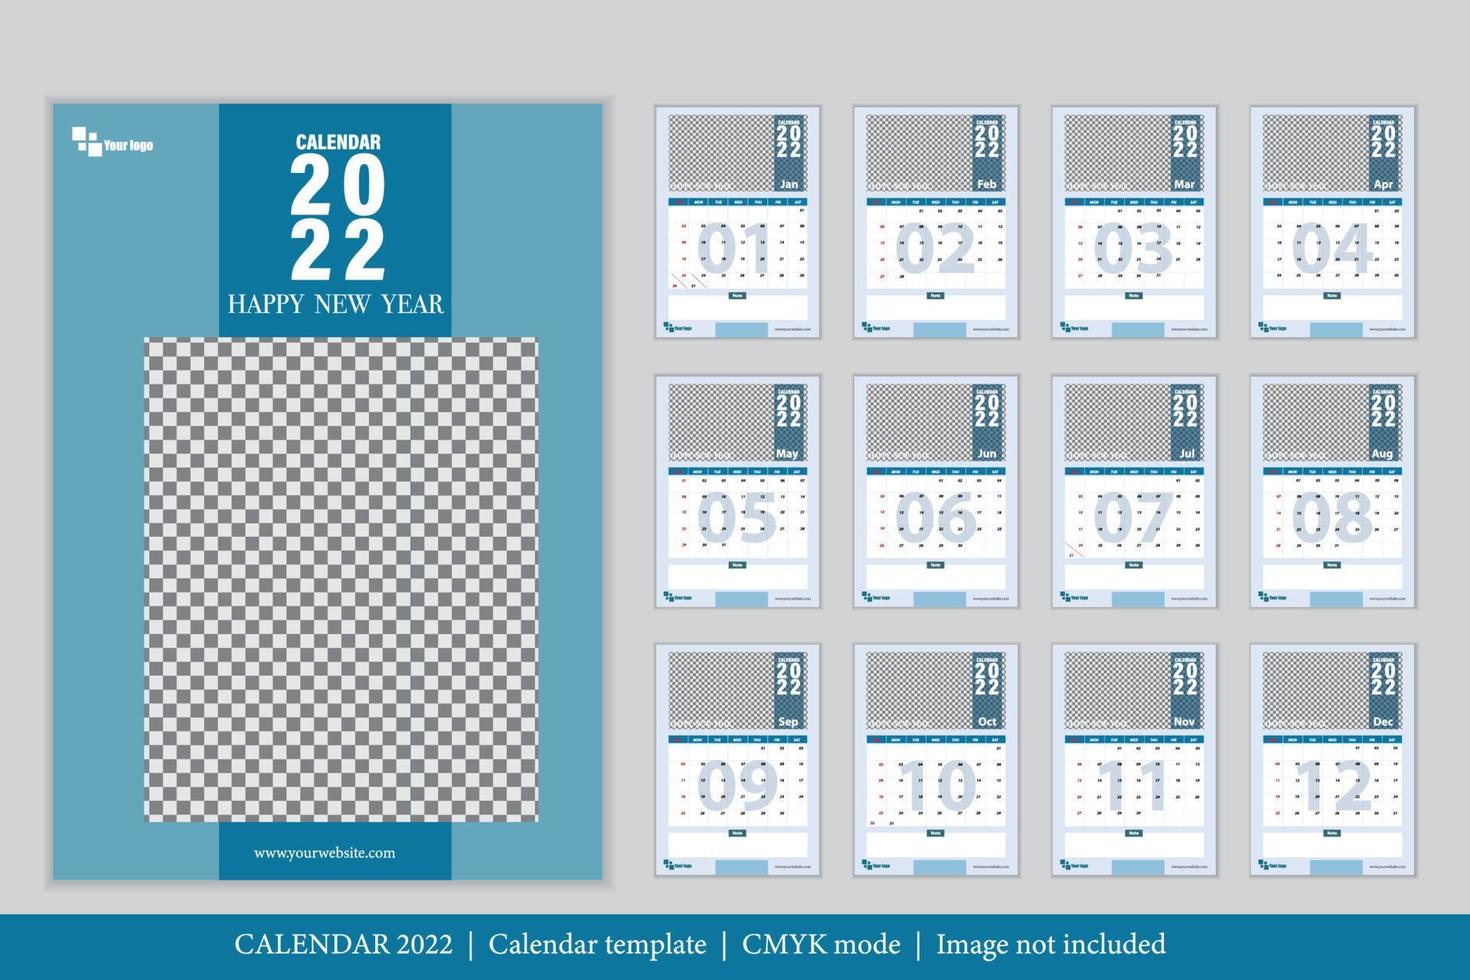 Kalender 2022 Design, das Jahr des Tigers Monatskartenvorlagen, Satz von 12 Monaten vektor